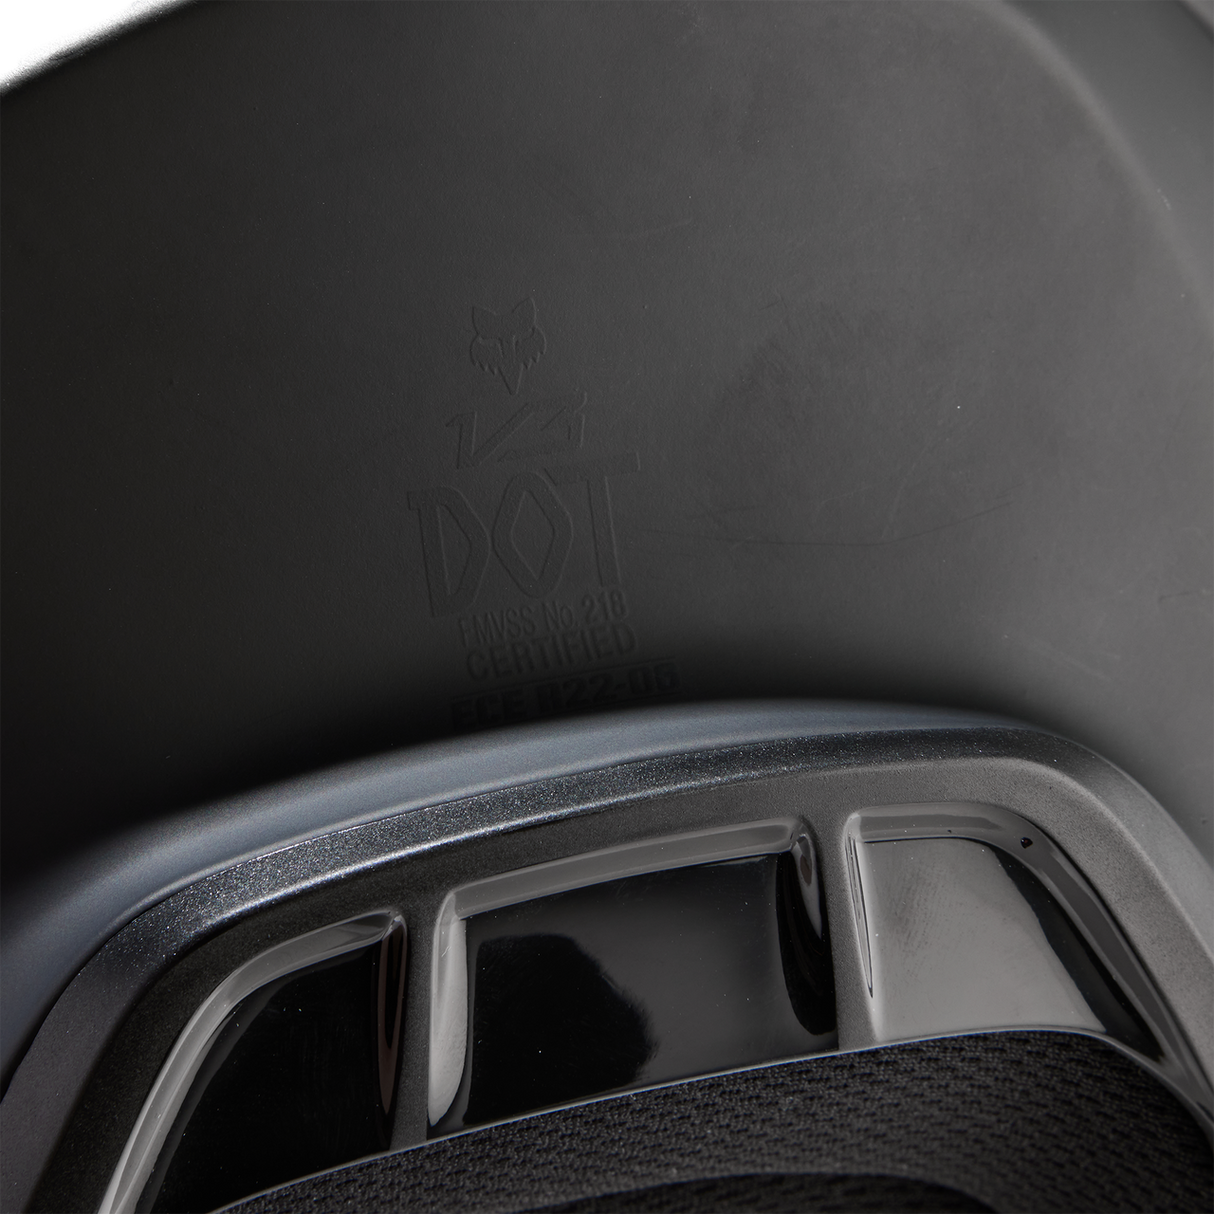 Fox V3 Solid Helmet Matte Black